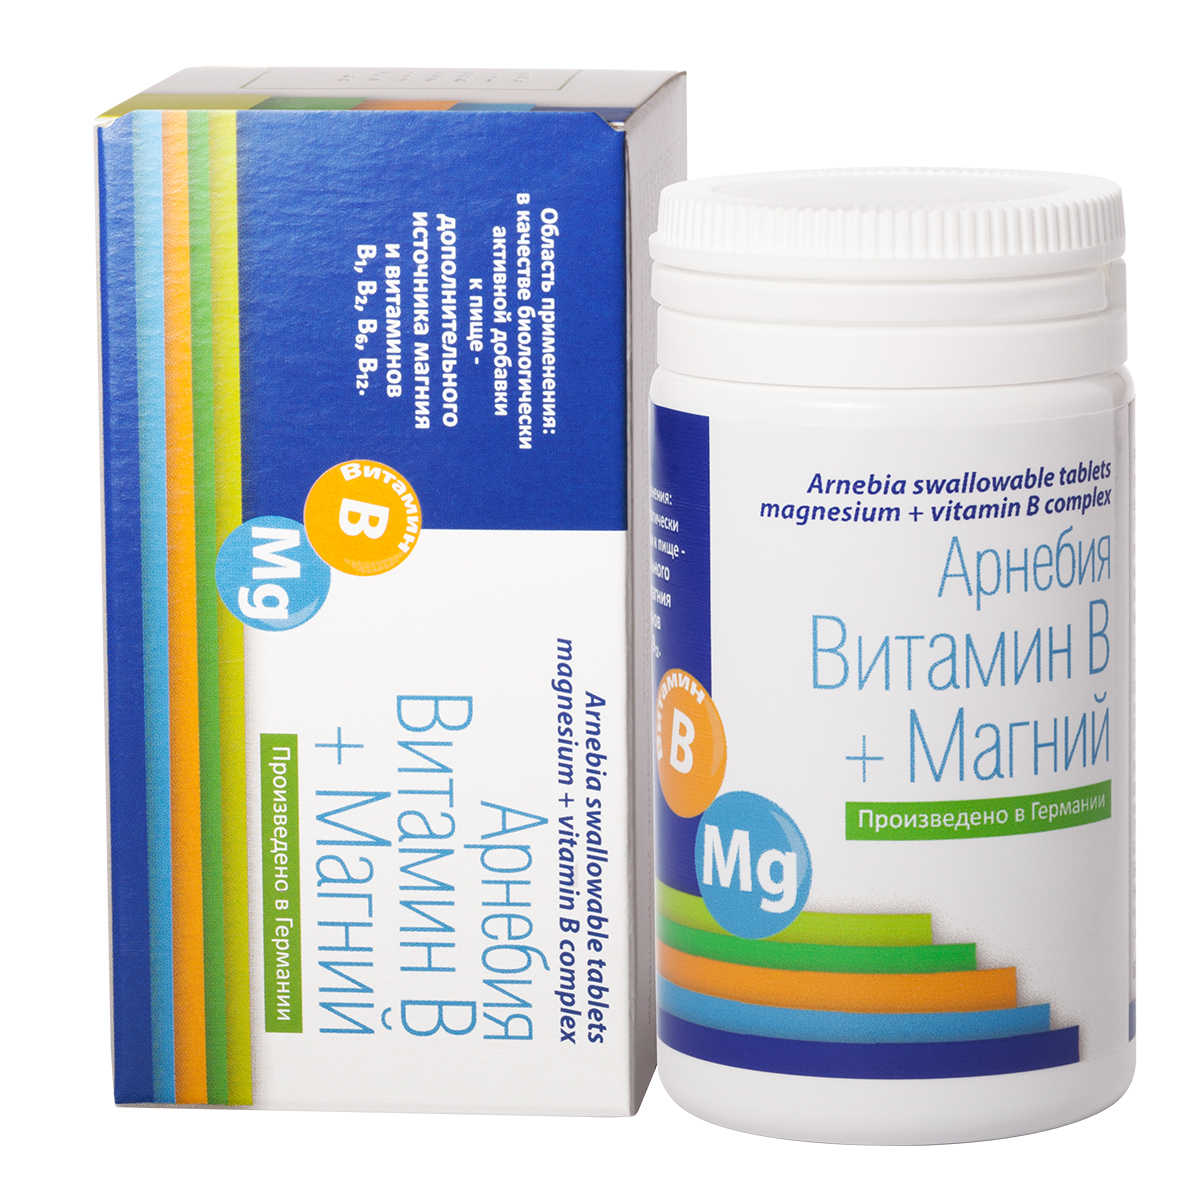 Арнебия Витамин В + магний таблетки 60 штук (Arnebia, БАДы) фото 0